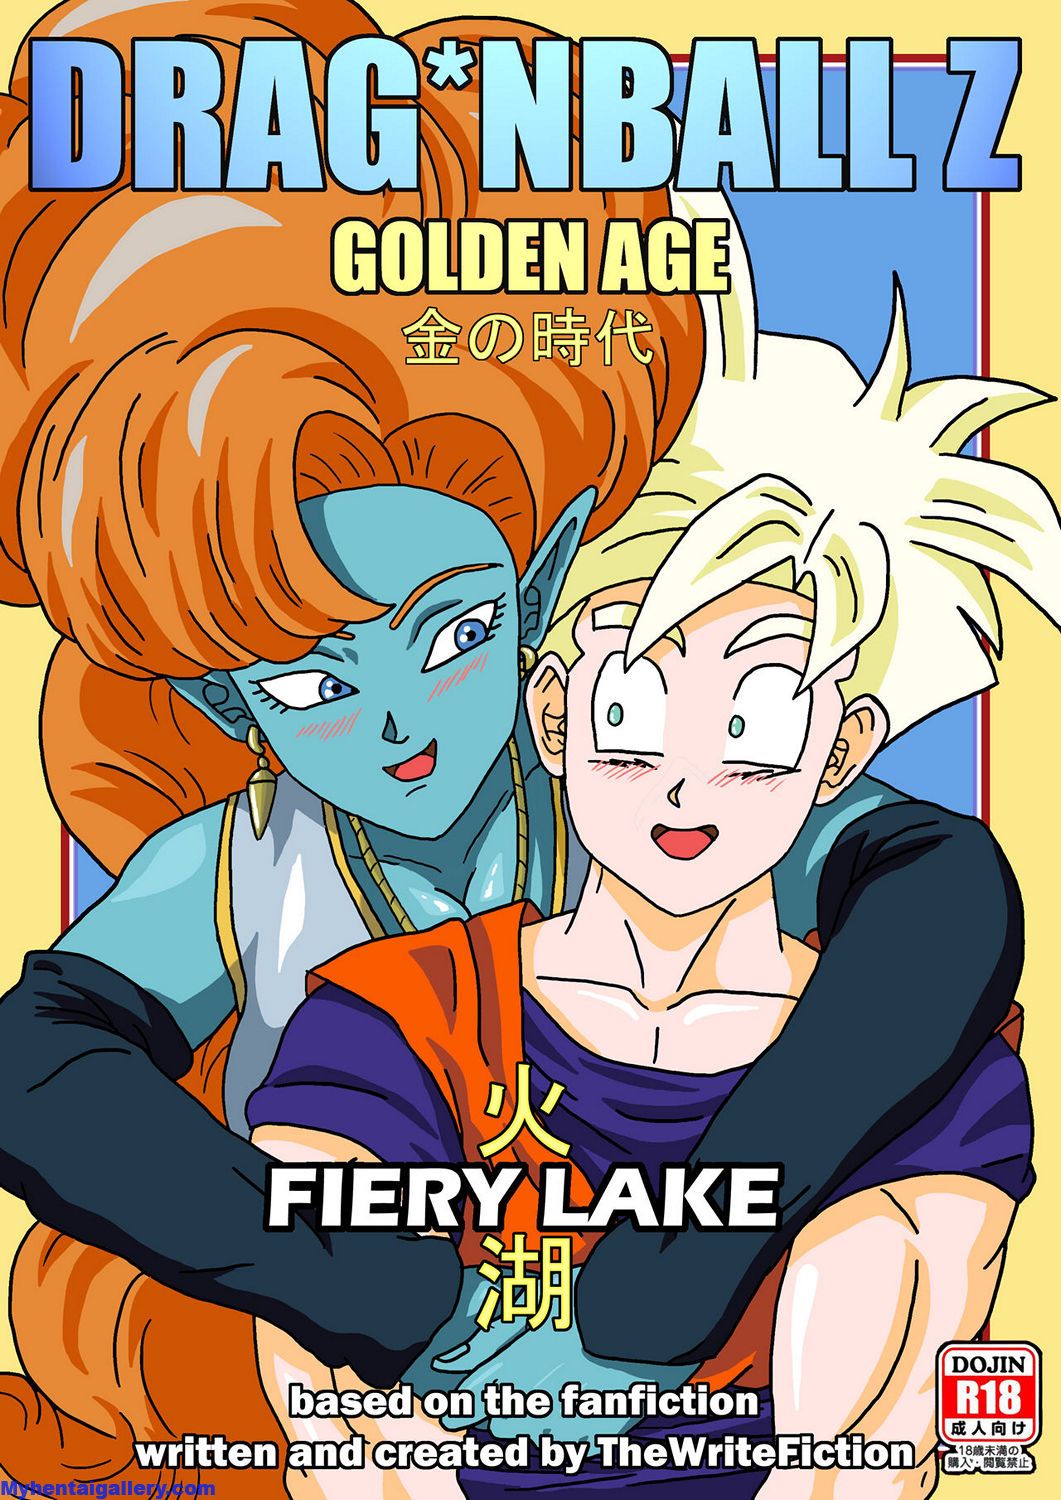  Dragon Ball Z Golden Age: Fiery Lake Porn Comic english 01